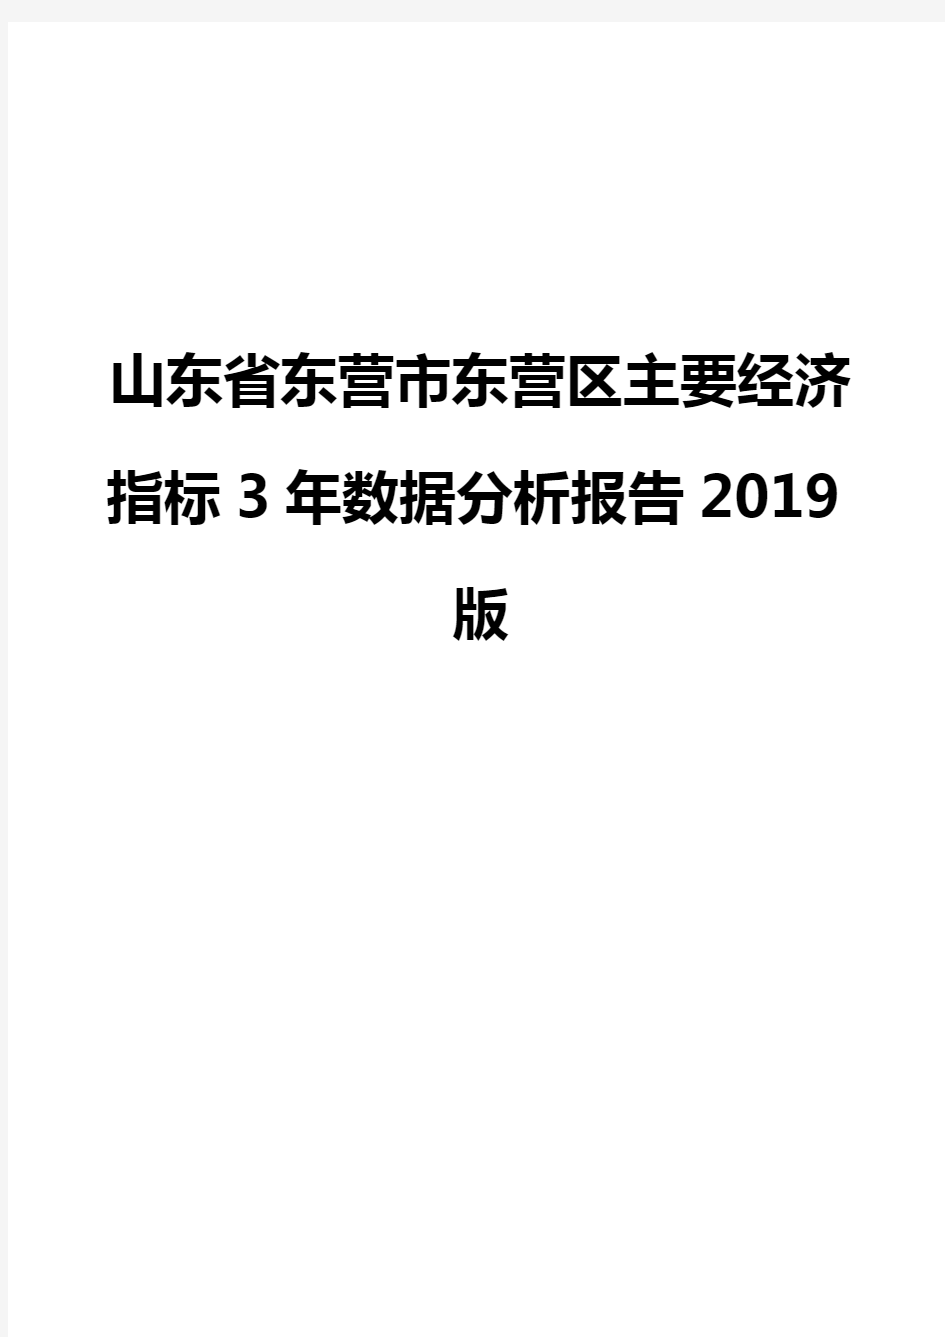 山东省东营市东营区主要经济指标3年数据分析报告2019版